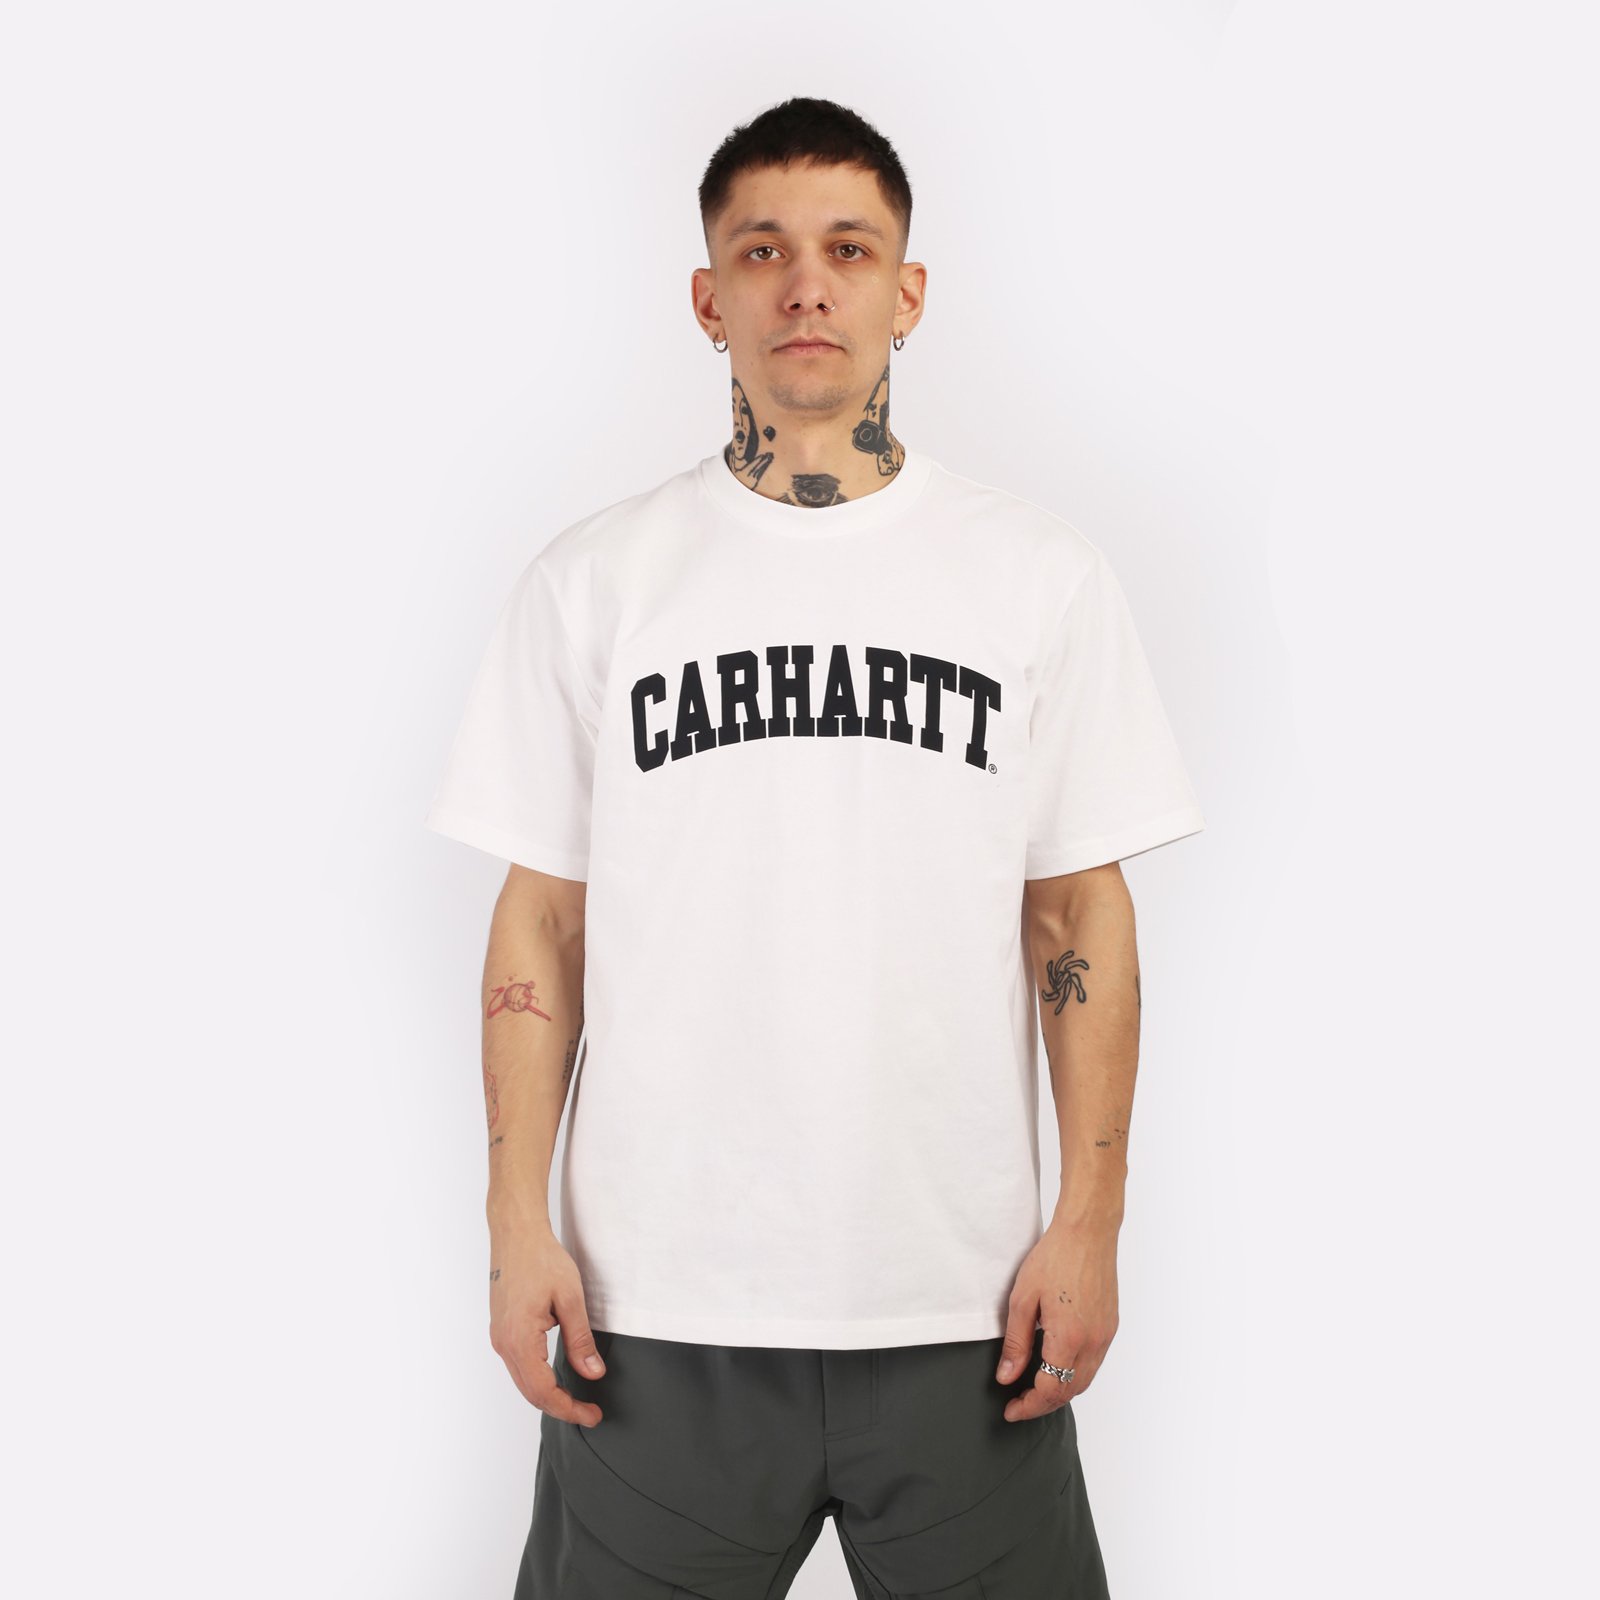 мужская футболка Carhartt WIP S/S University T-Shirt  (I028990-white/black)  - цена, описание, фото 1